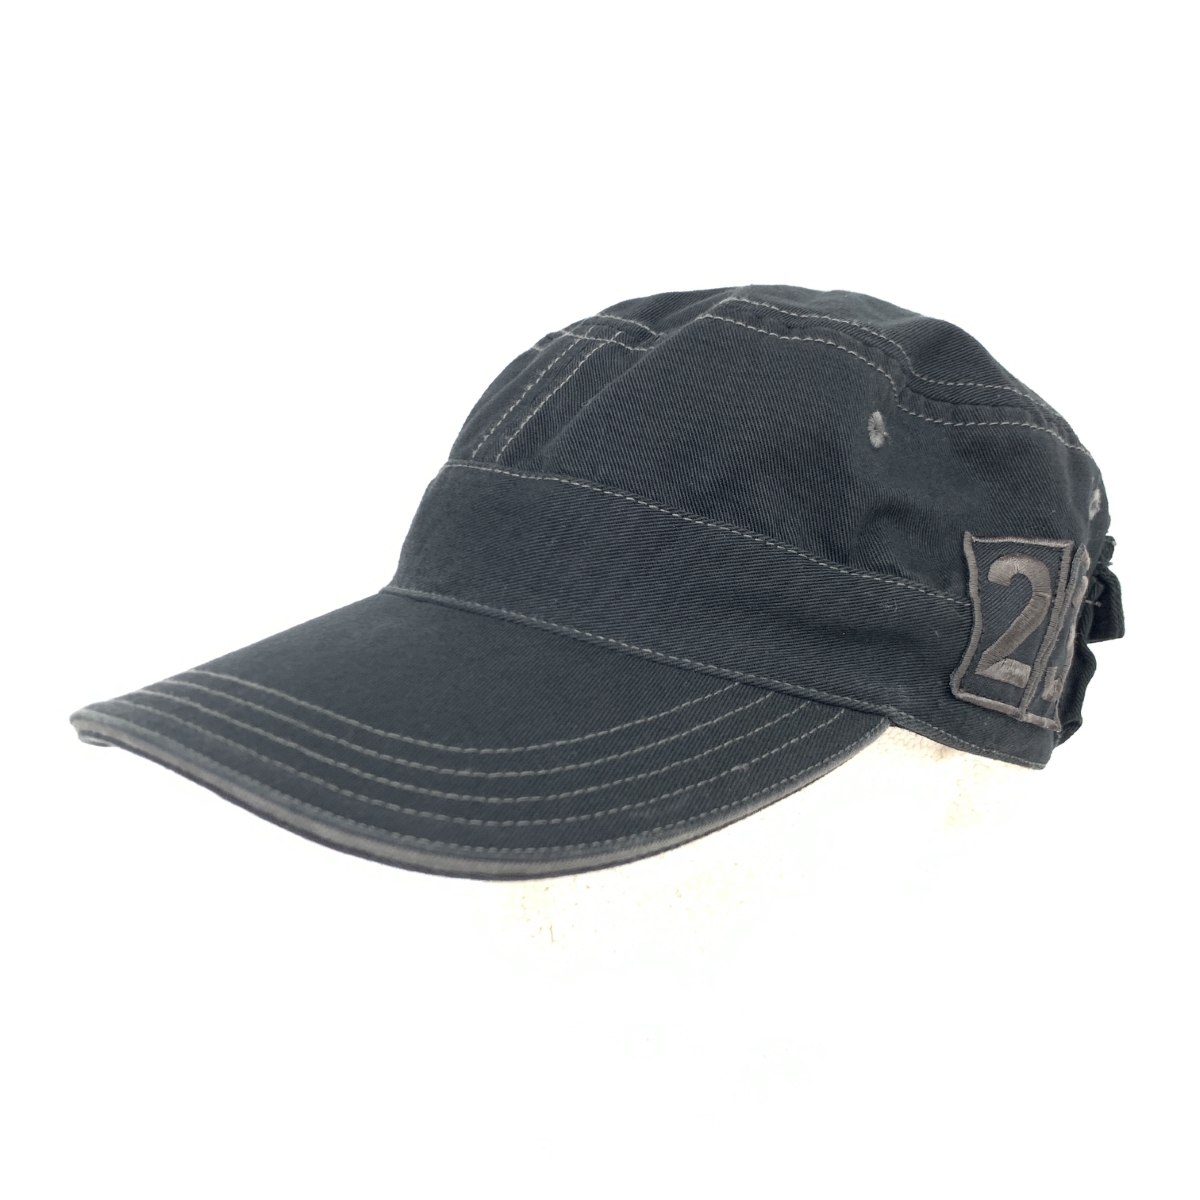 ◆23区 ニジュウサンク ゴルフ ワークキャップ ◆ ブラック コットン レディース 帽子 ハット hat 服飾小物_画像1